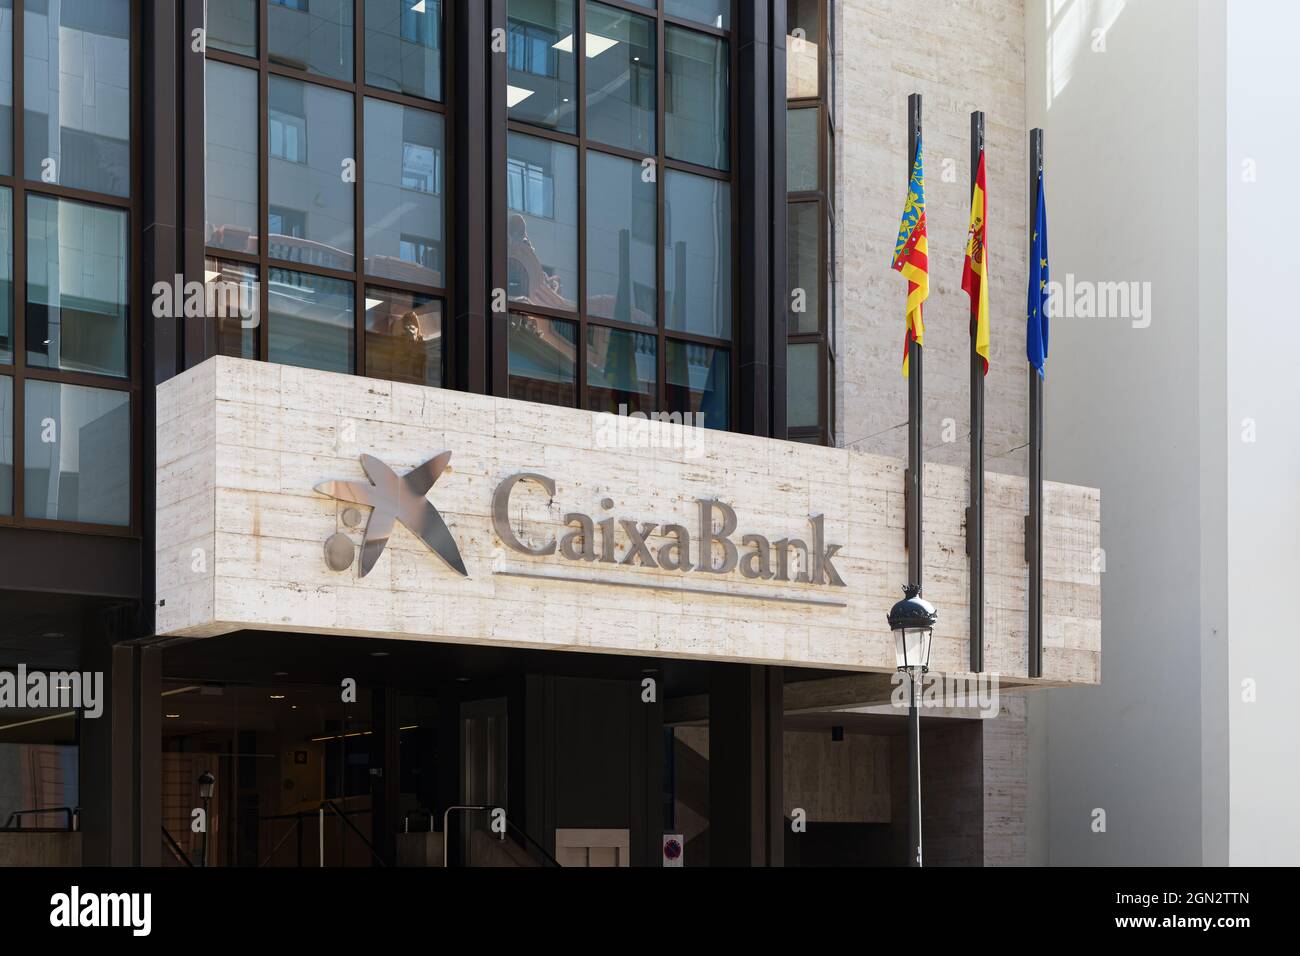 VALENCIA, SPANIEN - 21. SEPTEMBER 2021: Die CaixaBank ist eine spanische Bank mit Sitz in Valencia. Es ist eines der wichtigsten Finanzinstitute in diesem CO Stockfoto